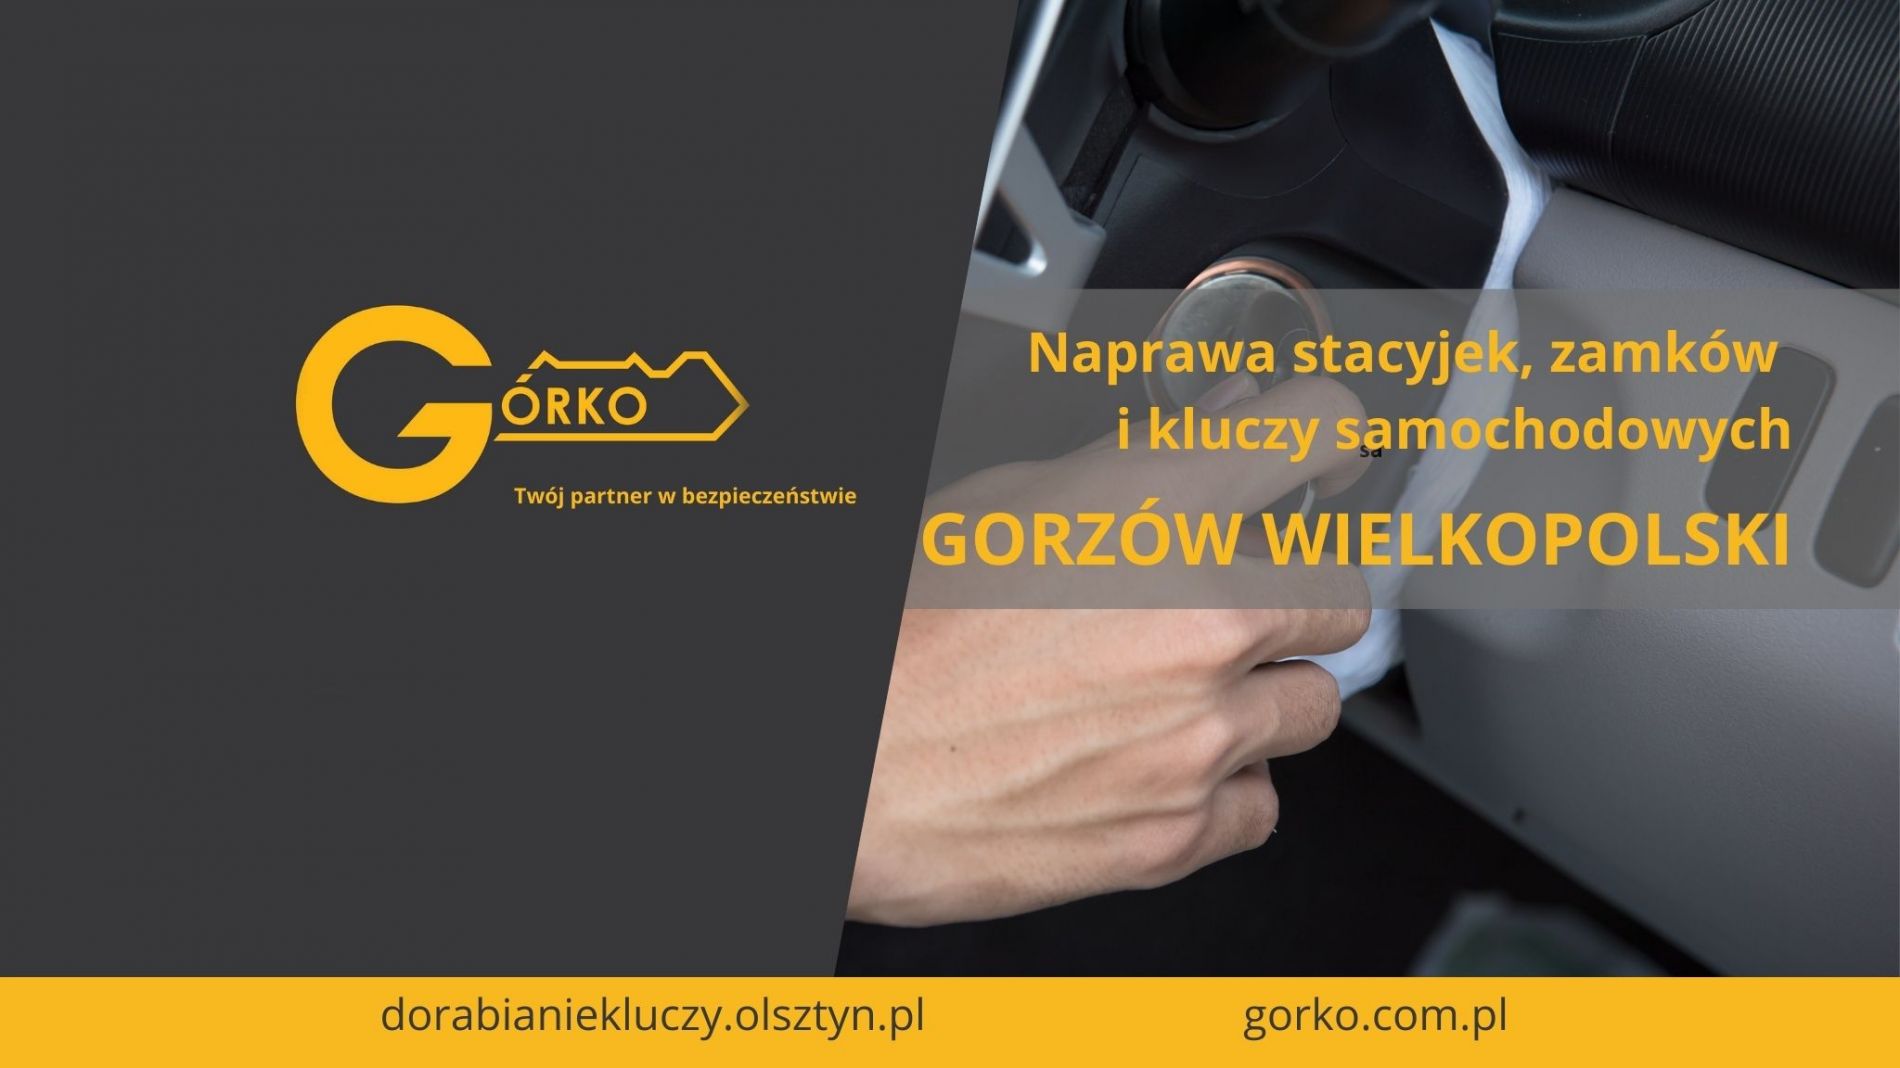 Naprawa stacyjek, zamków i kluczy samochodowych – Gorzów Wielkopolski (Usługa zdalna)